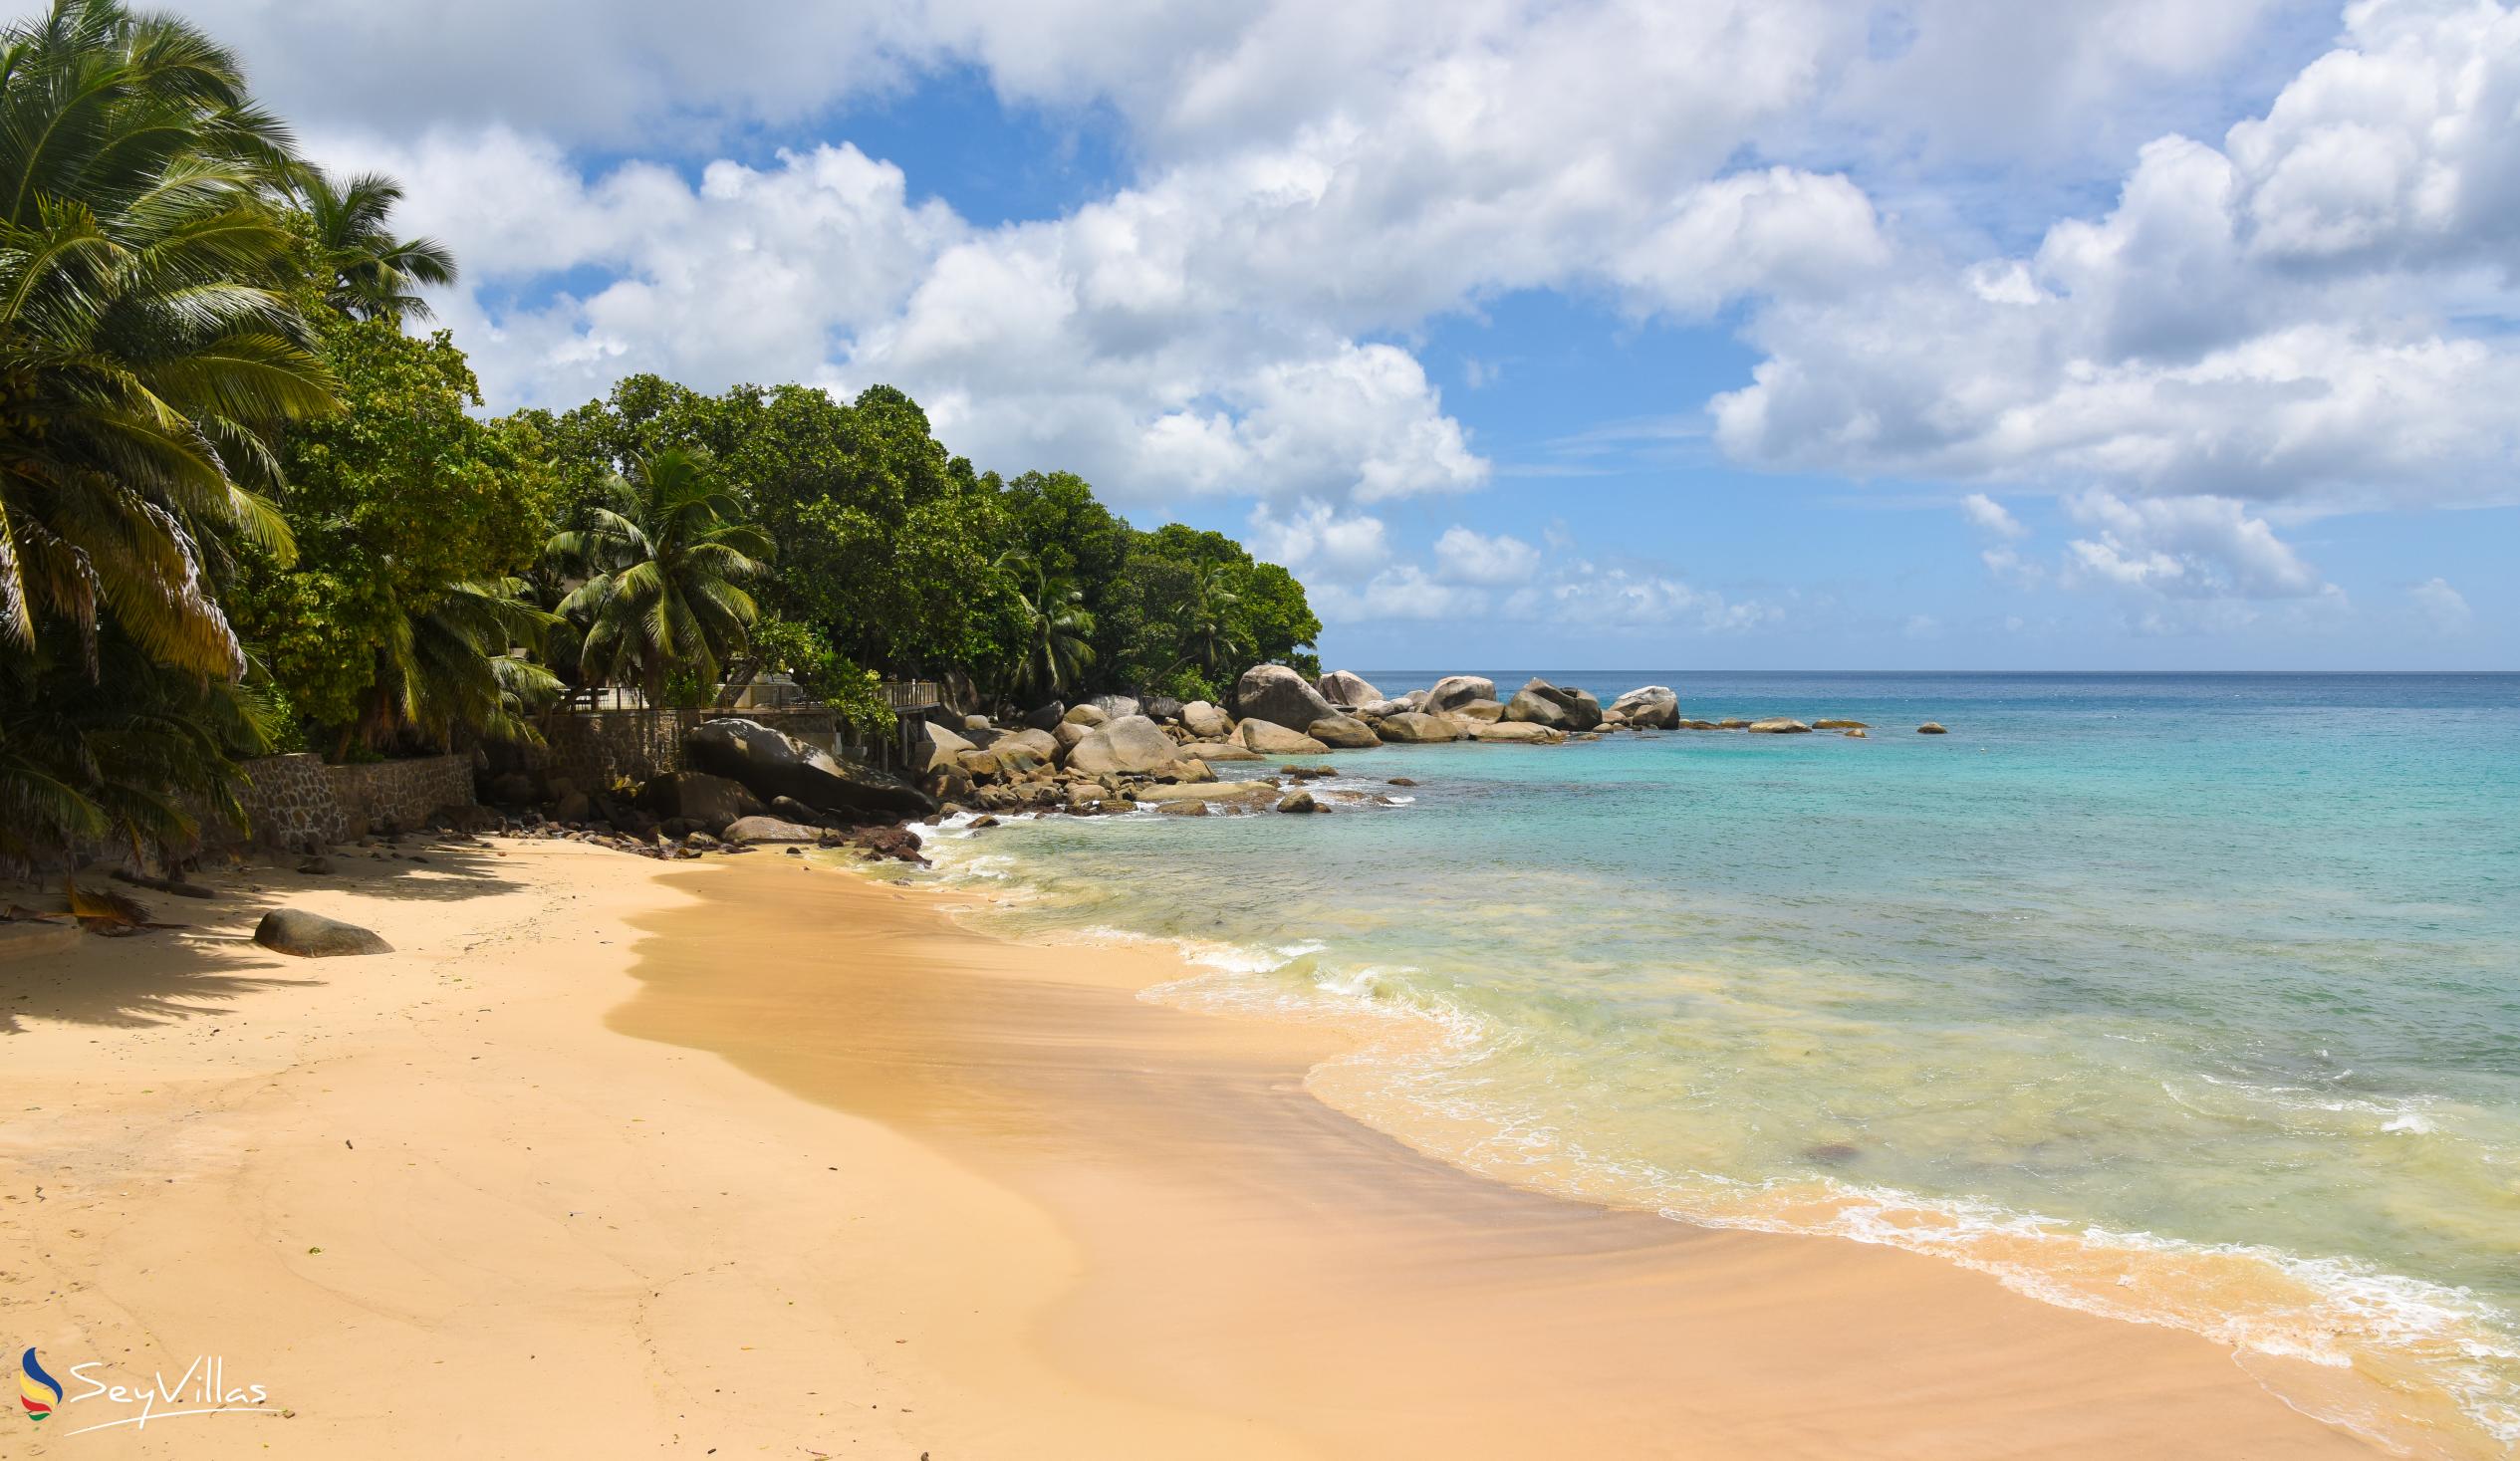 Photo 11: Glacis Beach - Mahé (Seychelles)